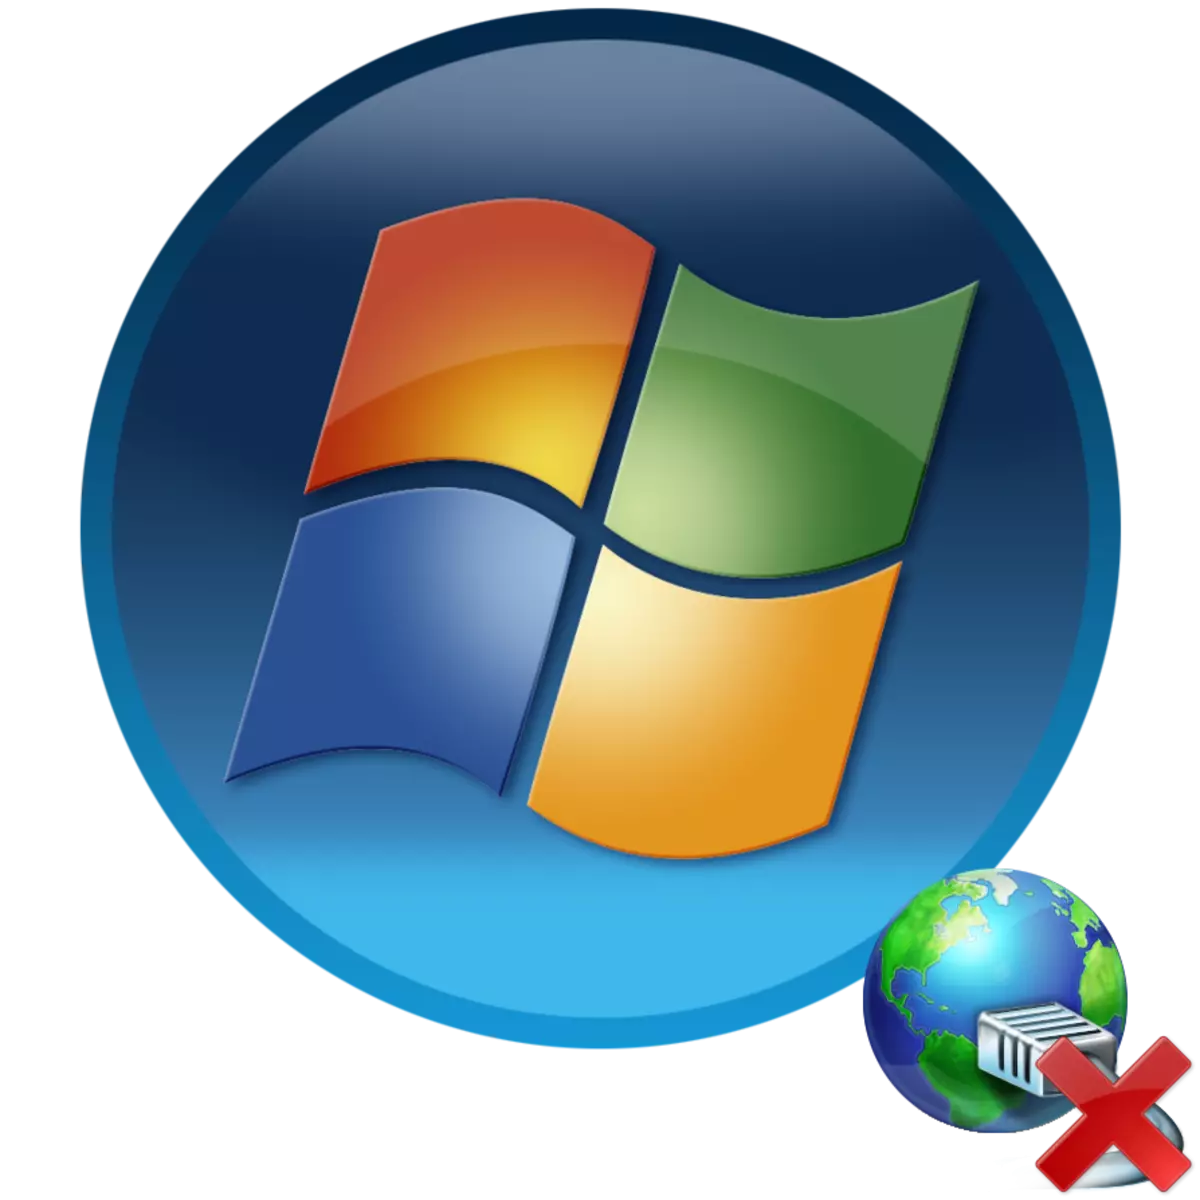 ເຄືອຂ່າຍທີ່ບໍ່ໄດ້ລະບຸຊື່ໃນ Windows 7